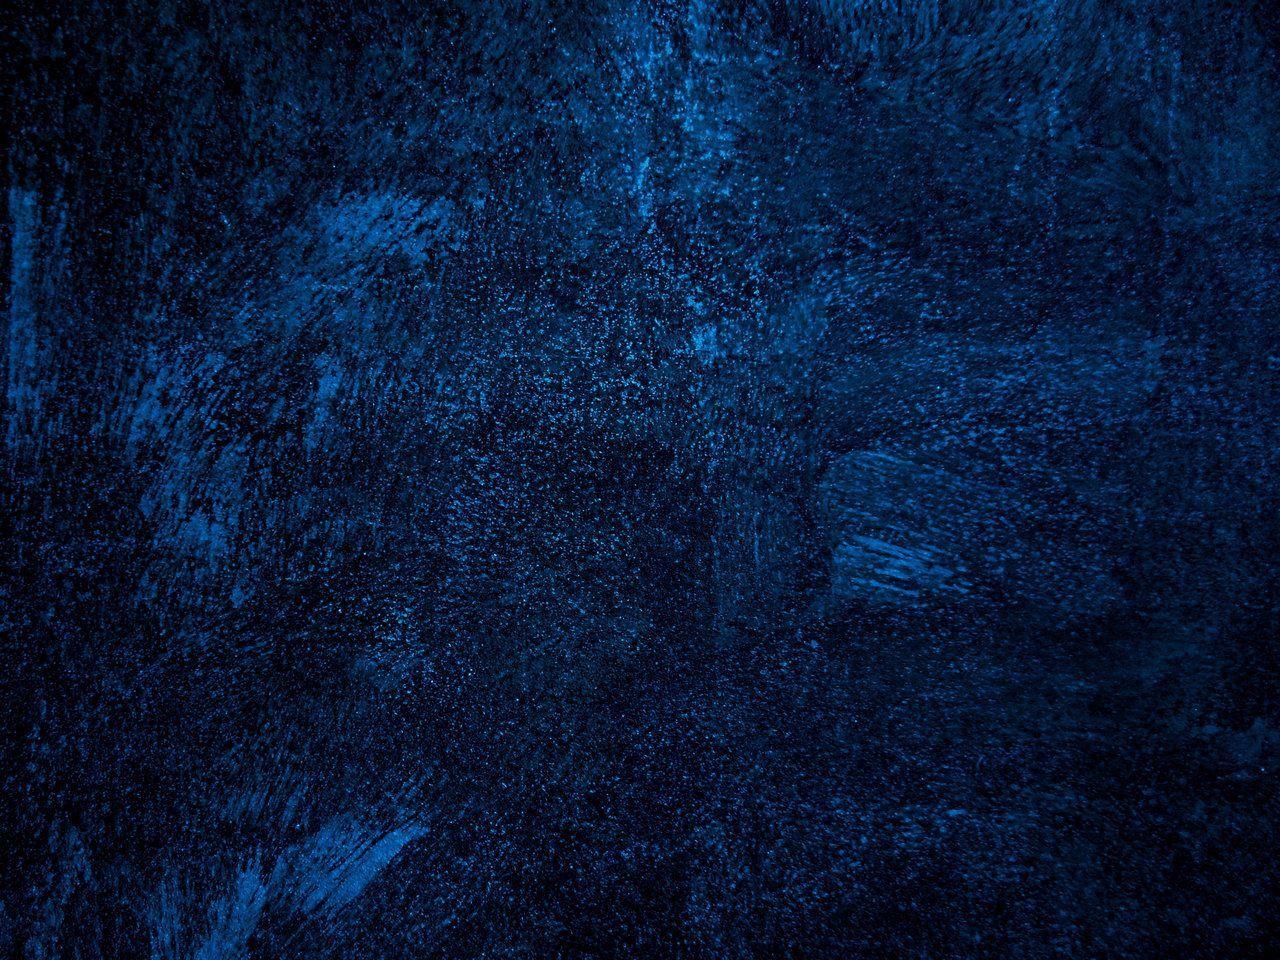 Dark Blue Background Image In